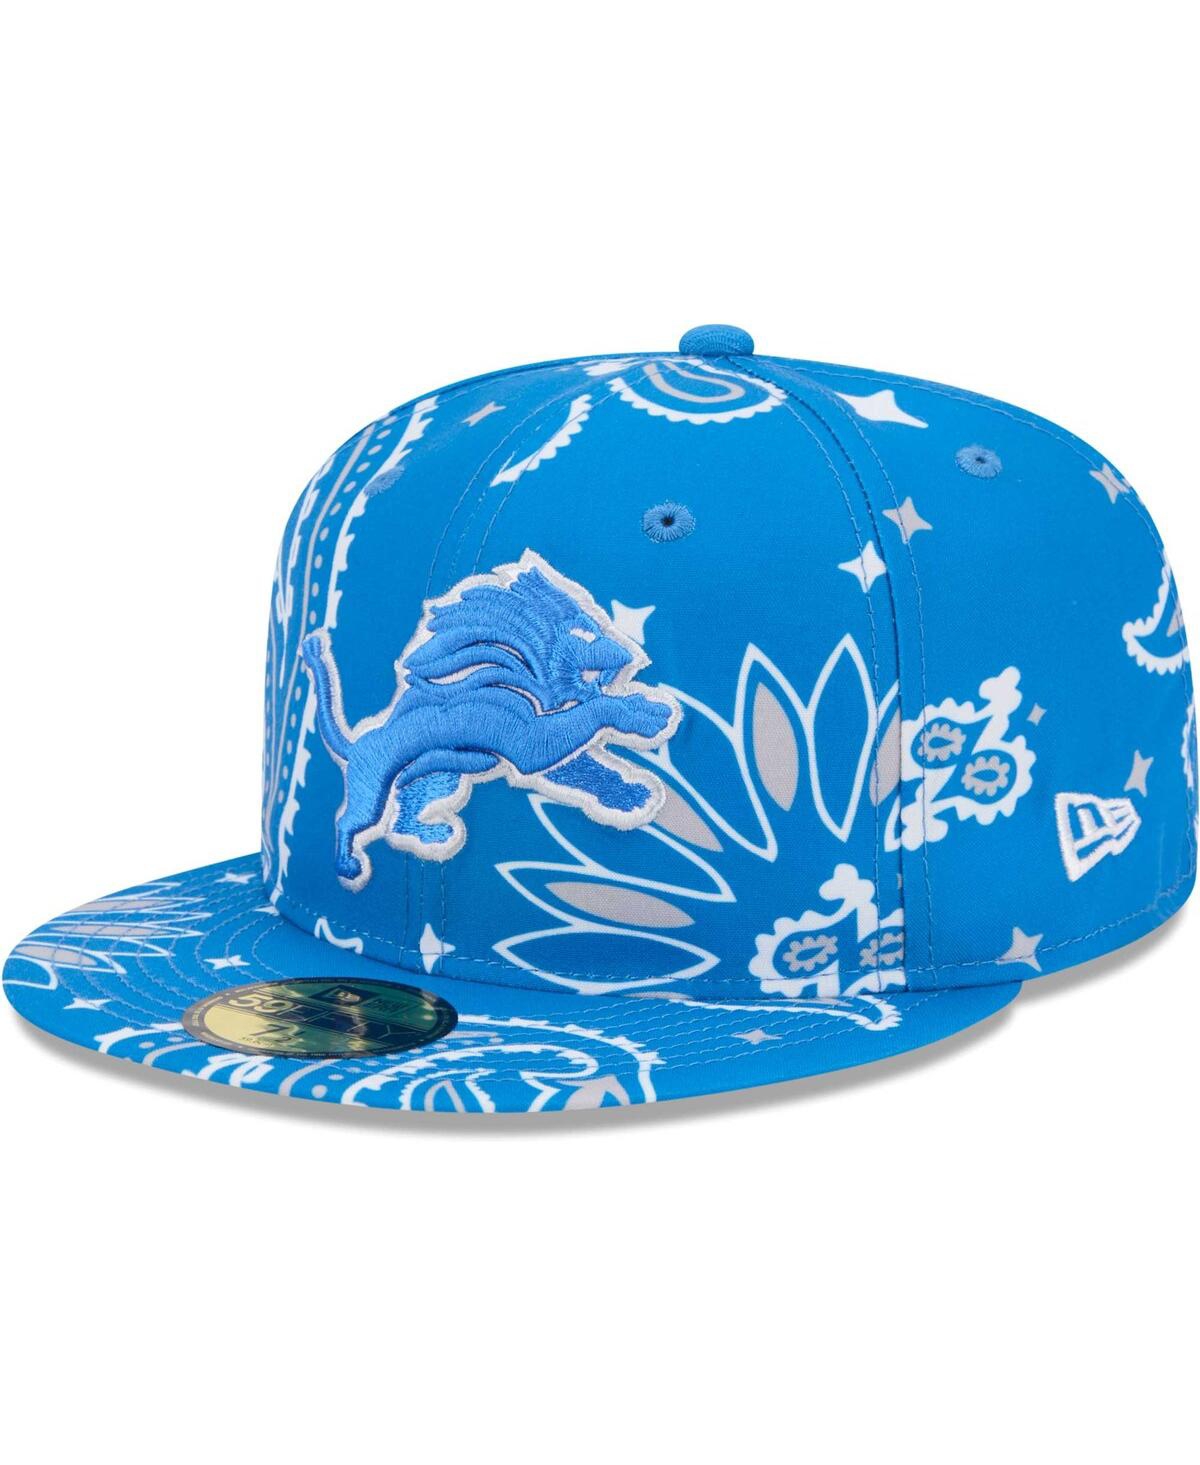 Shop New Era Men's Blue Detroit Lions Paisley 59fifty Fitted Hat